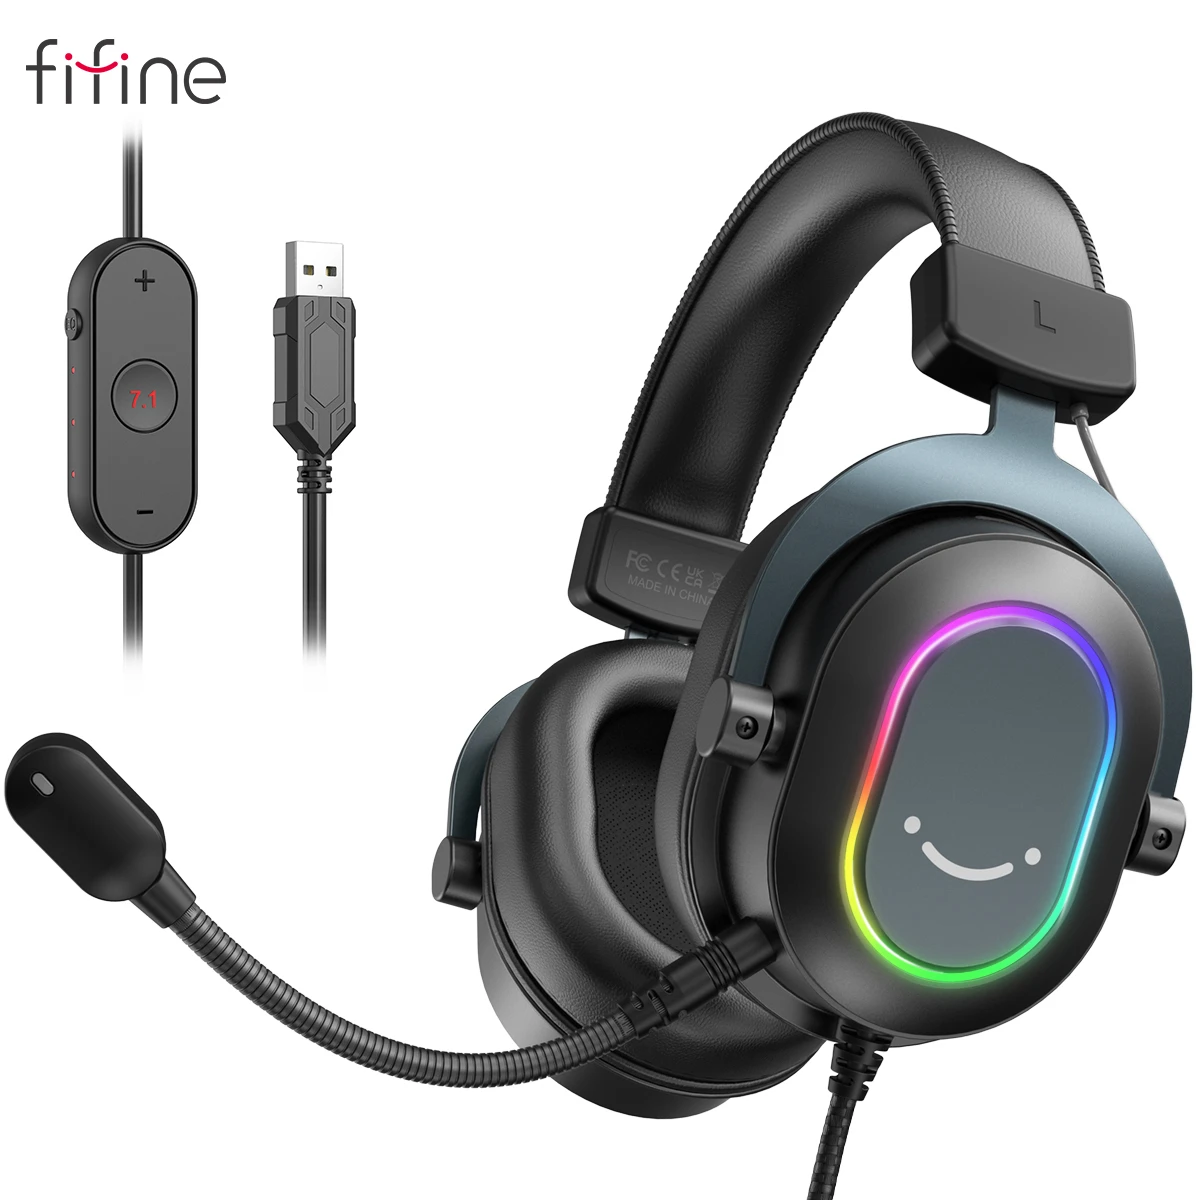 Headset RGB Dinâmico com Microfone Som Surround 7.1 – Fifine